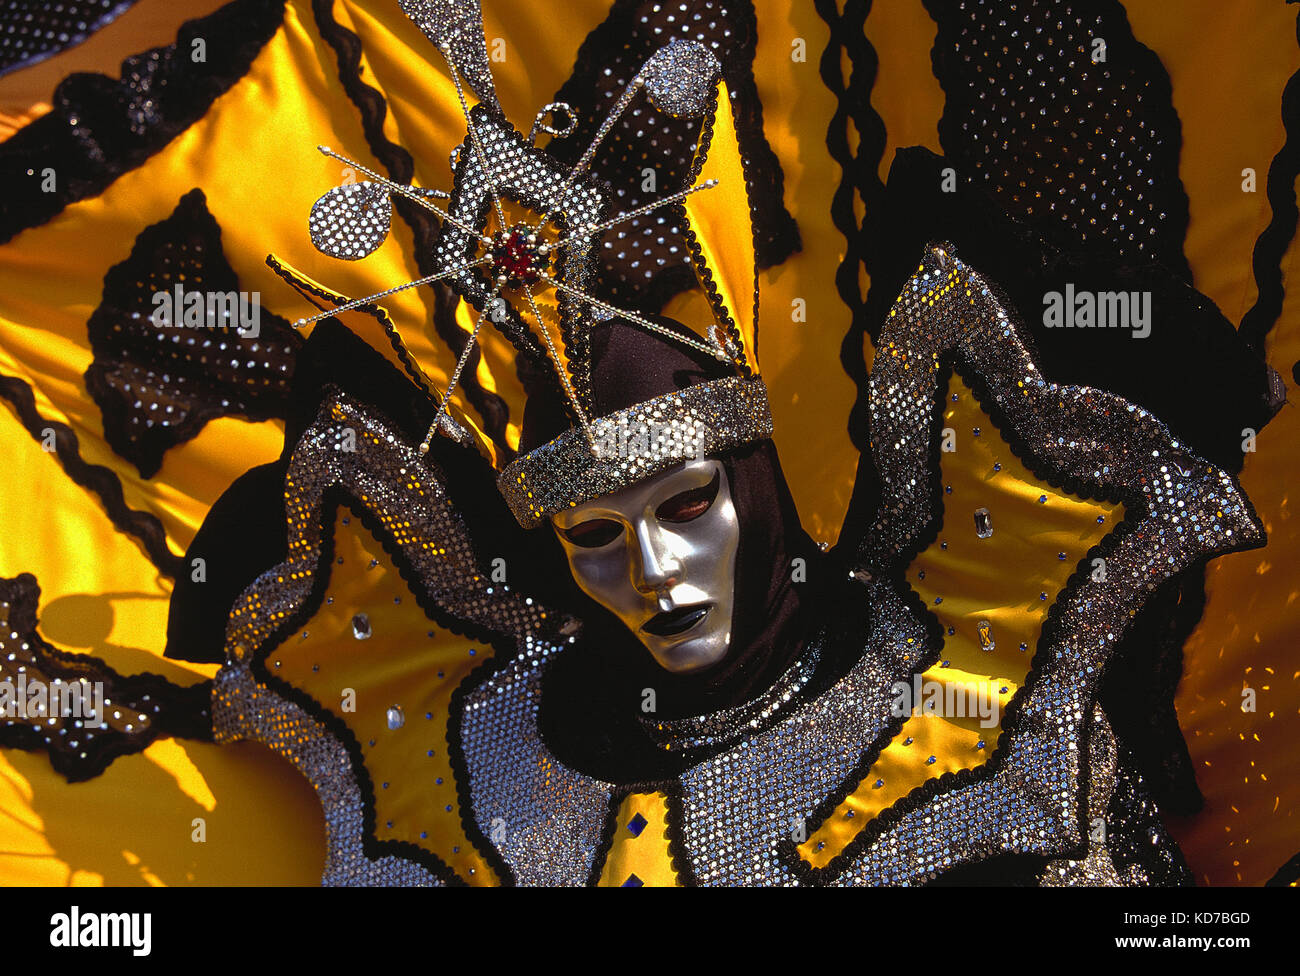 Italie. Venise. Carnaval. Personne en costume. Gros plan du visage avec masque argenté. Banque D'Images